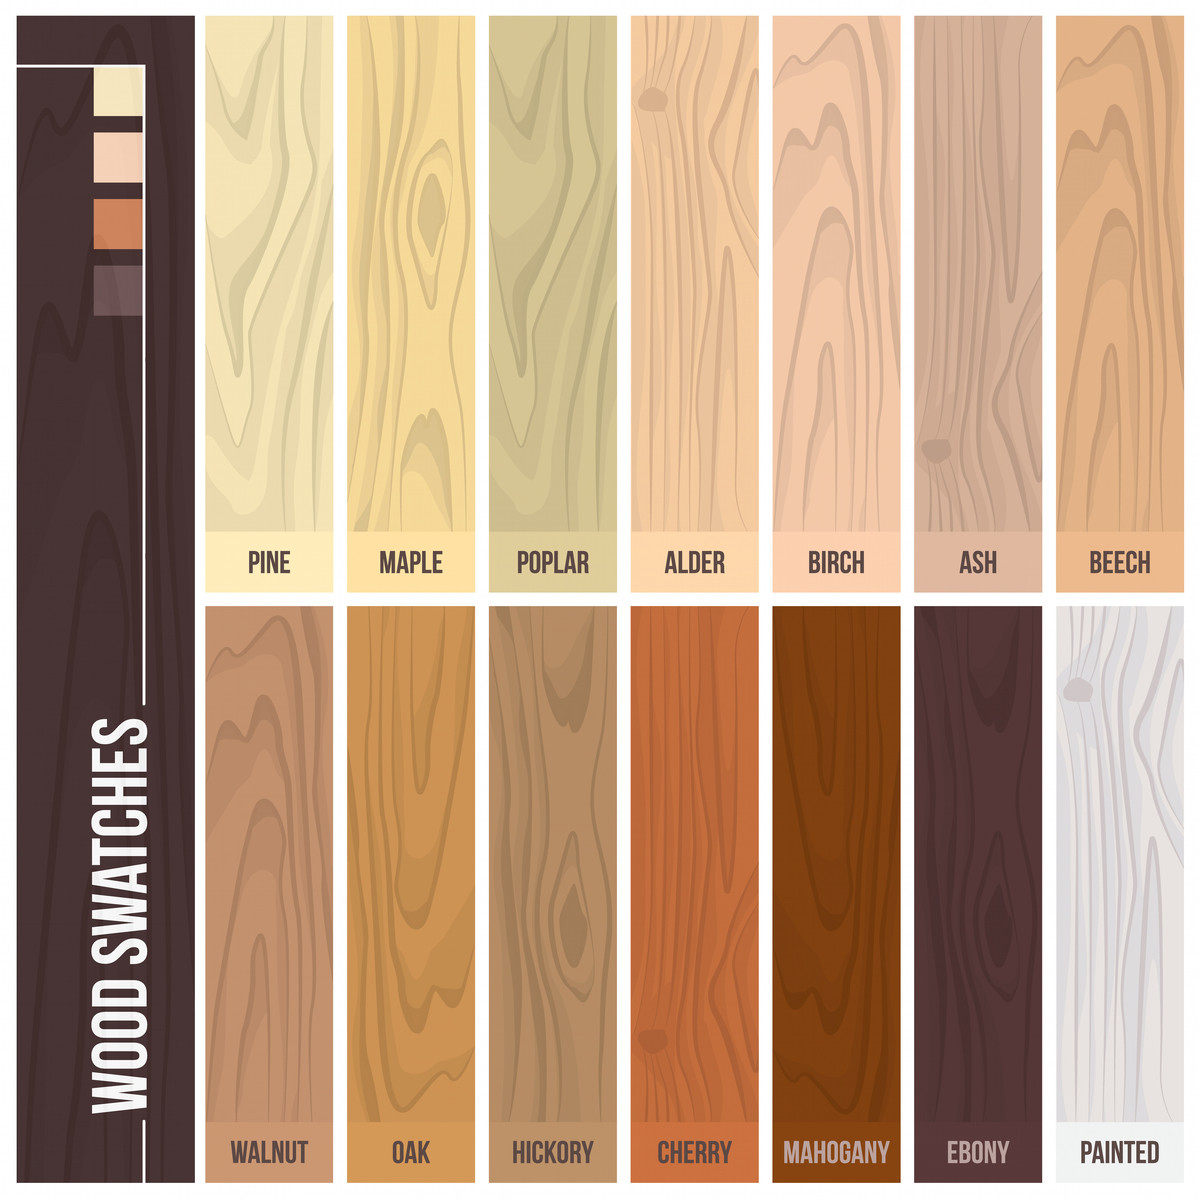 Homes with Dark Hardwood Floors Of 12 Types Of Hardwood Flooring Species Styles Edging Dimensions Pertaining to Types Of Hardwood Flooring Illustrated Guide